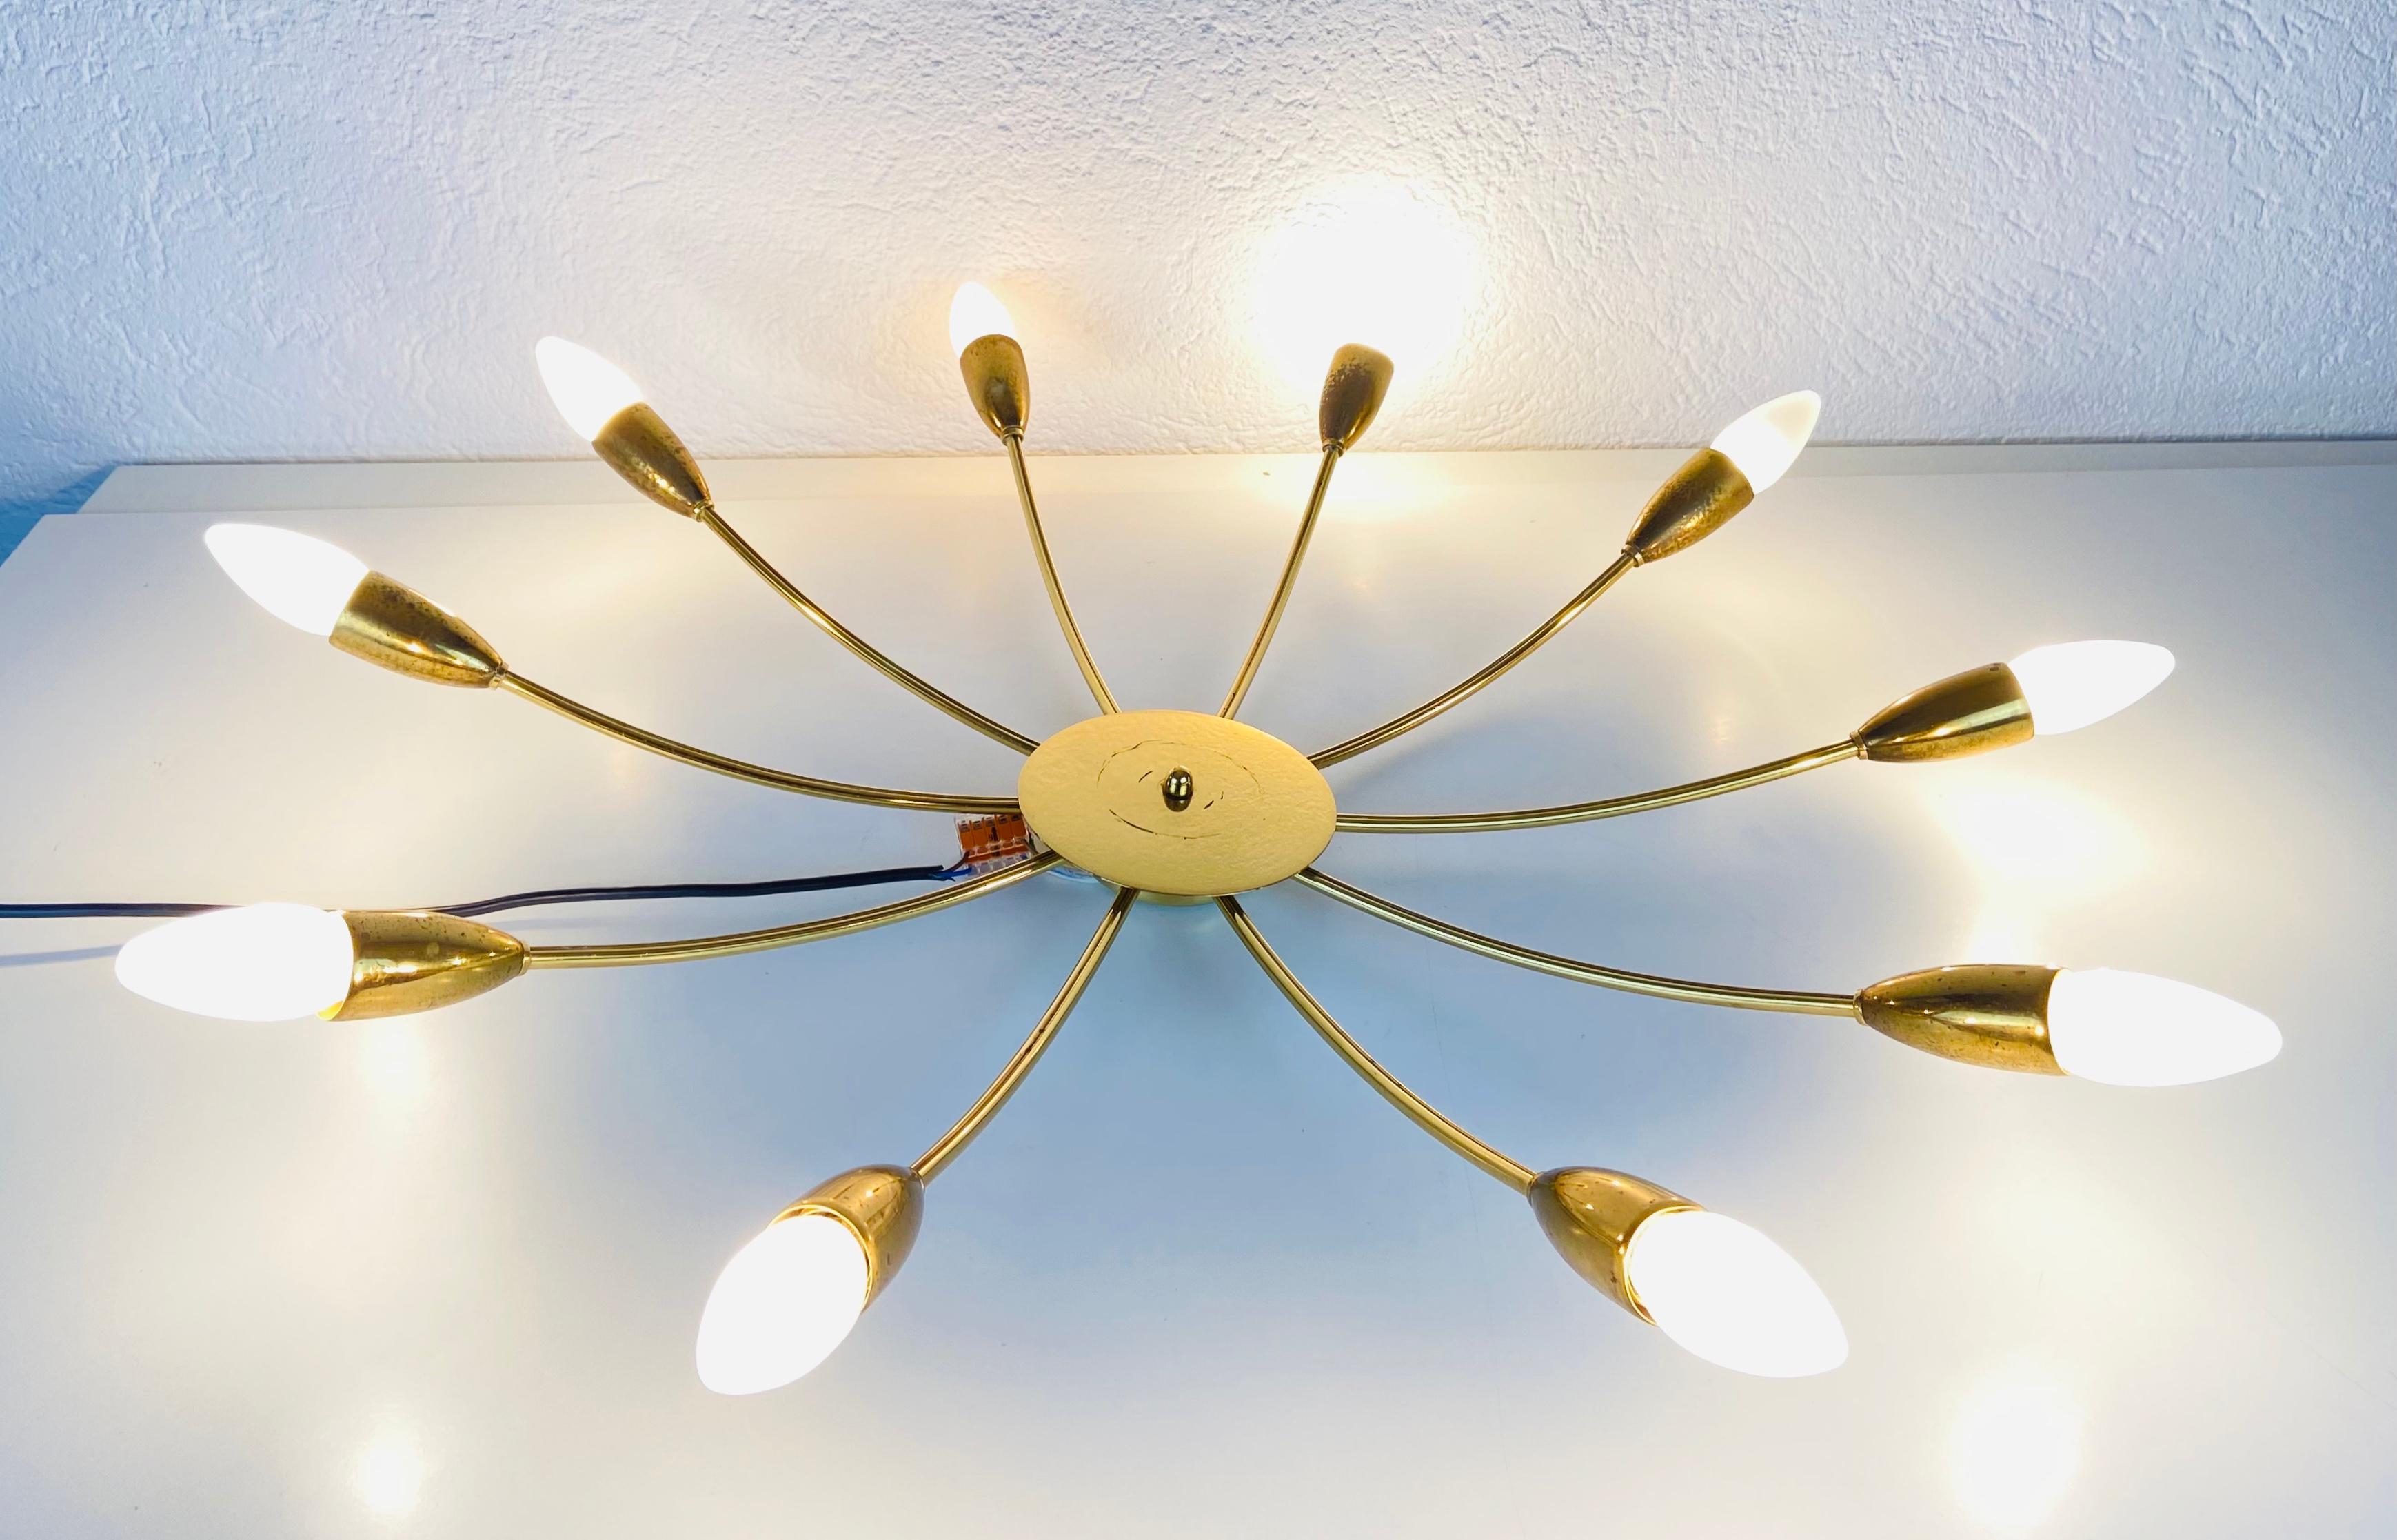 Ein Sputnik-Kronleuchter, hergestellt in Deutschland in den 1950er Jahren. Sie fasziniert mit ihren zehn Messingarmen, von denen jeder eine E14-Glühbirne enthält. Die Form der Leuchte ähnelt einer Spinne.

Die Leuchte benötigt 10 E14-Glühbirnen.